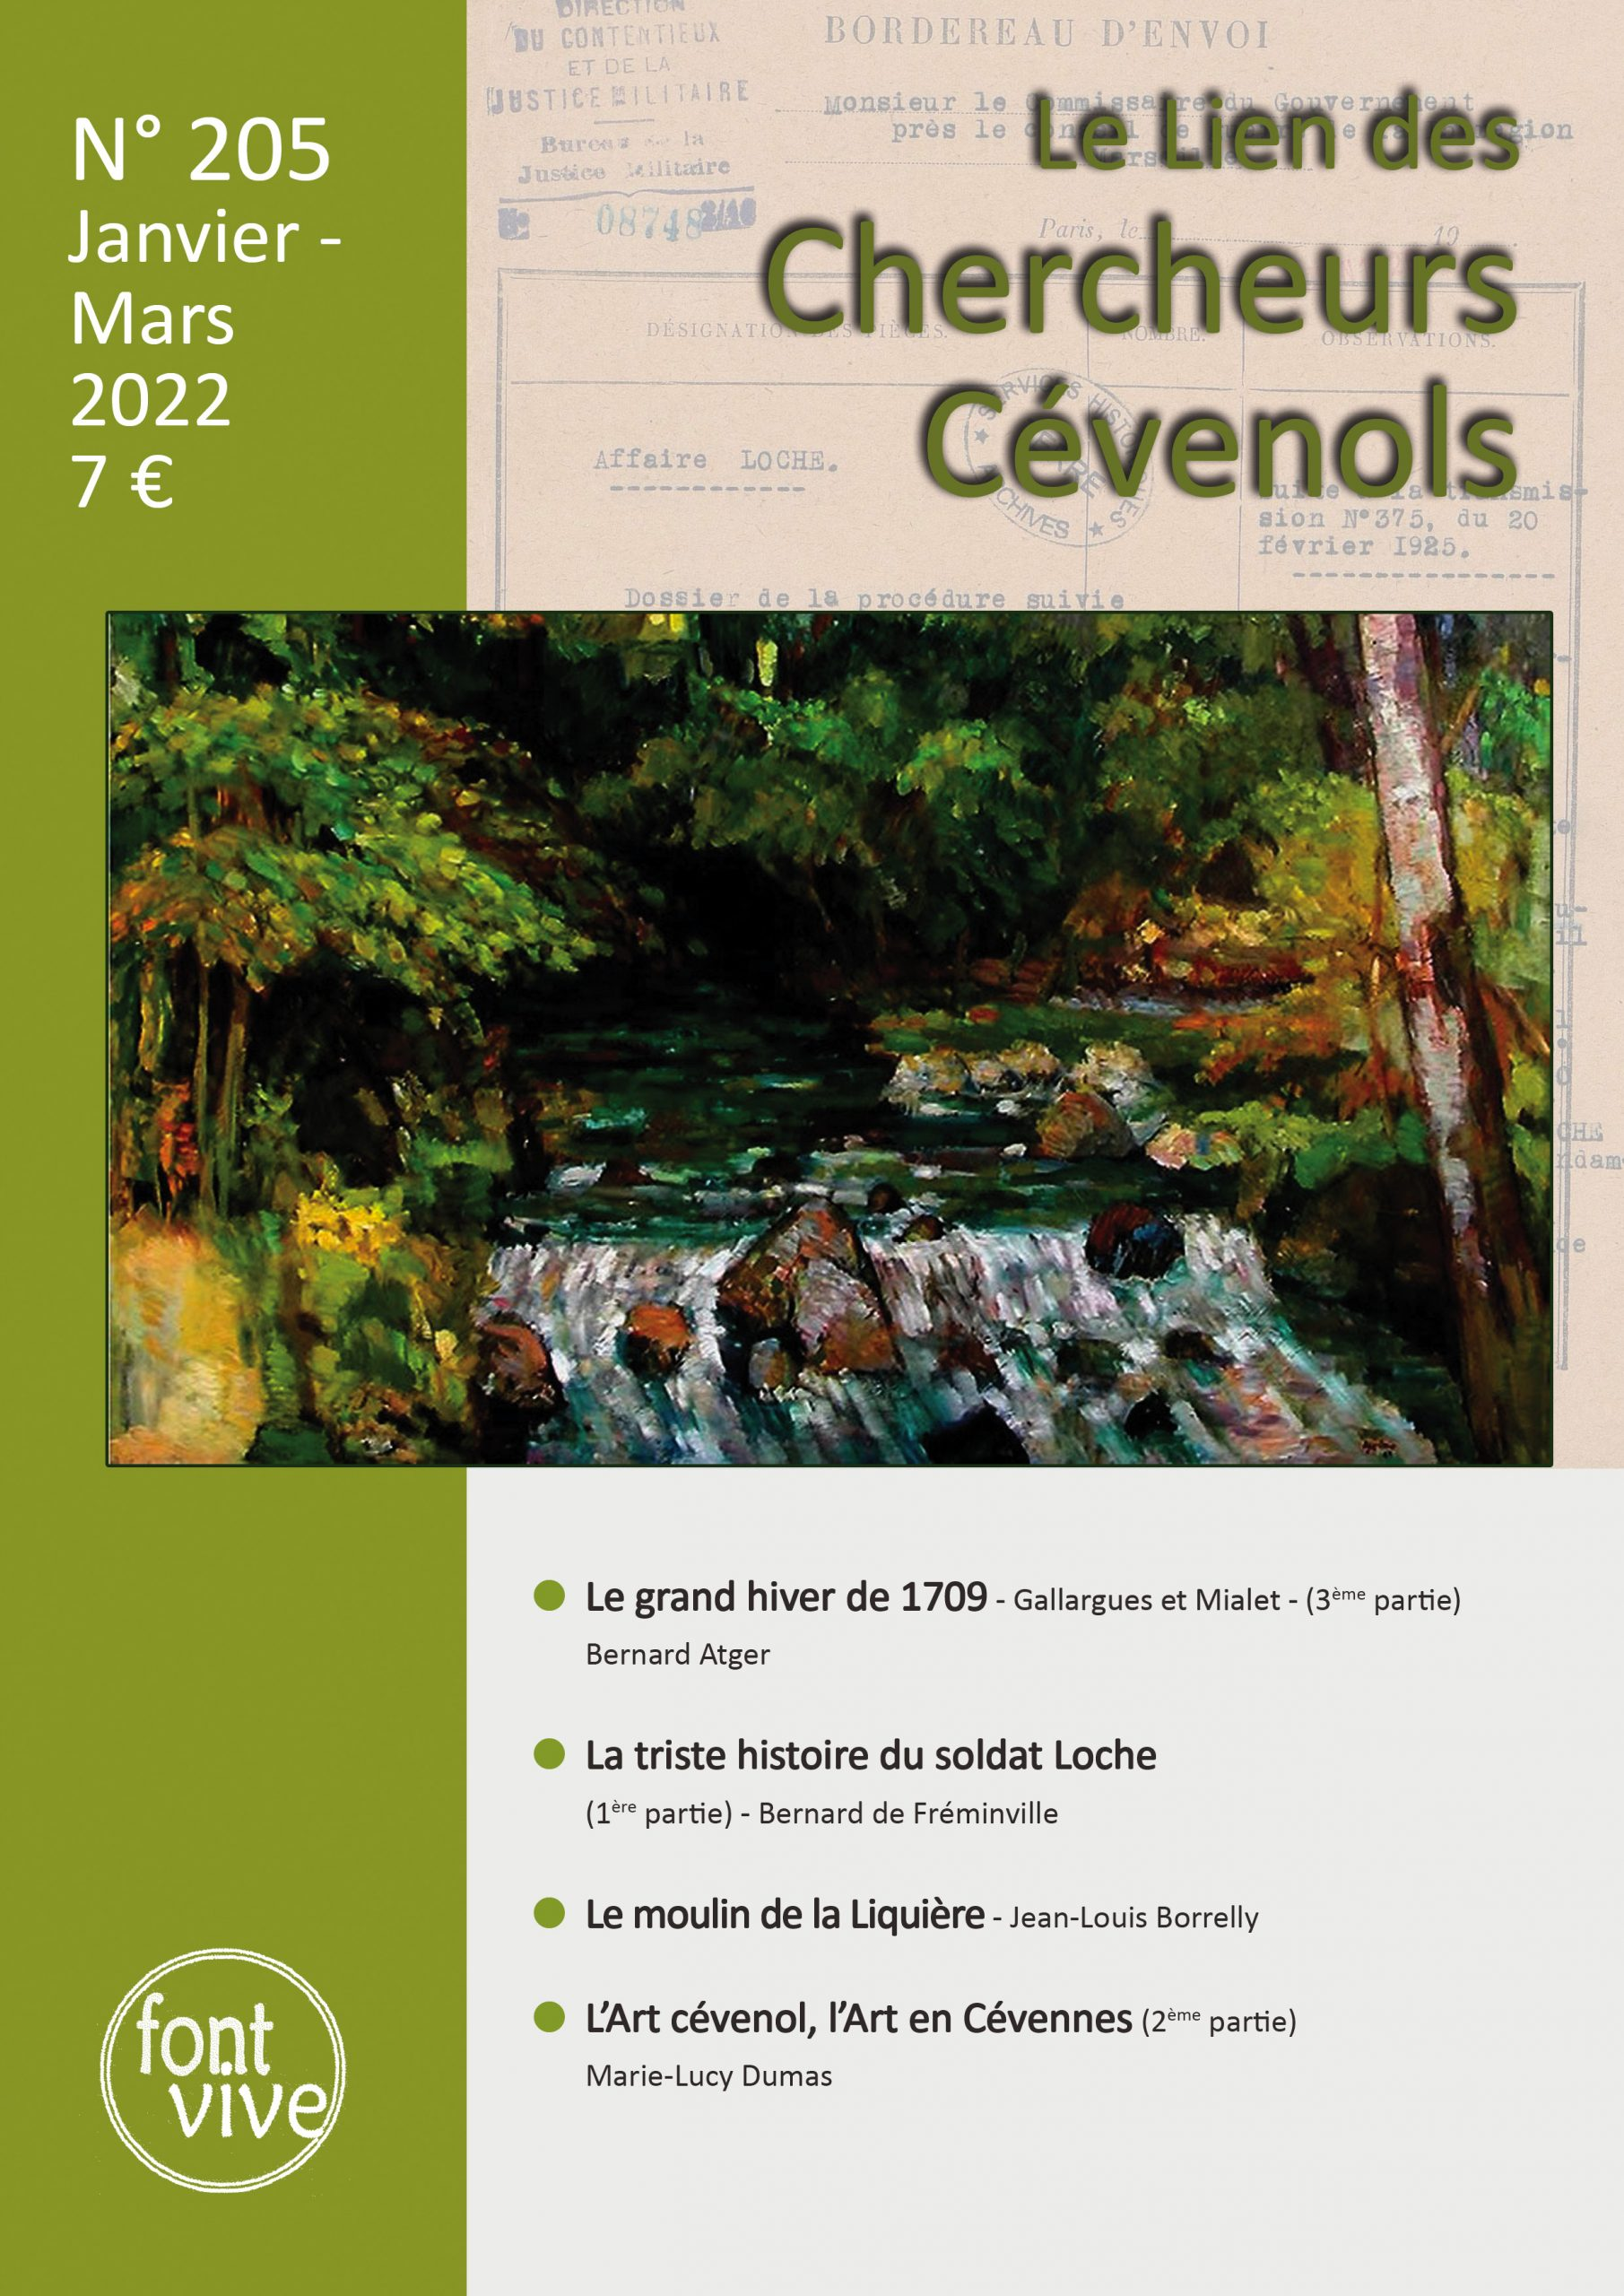 Le Lien des Chercheurs Cévenols, 205 - Janvier - mars 2022 - Bulletin n° 205